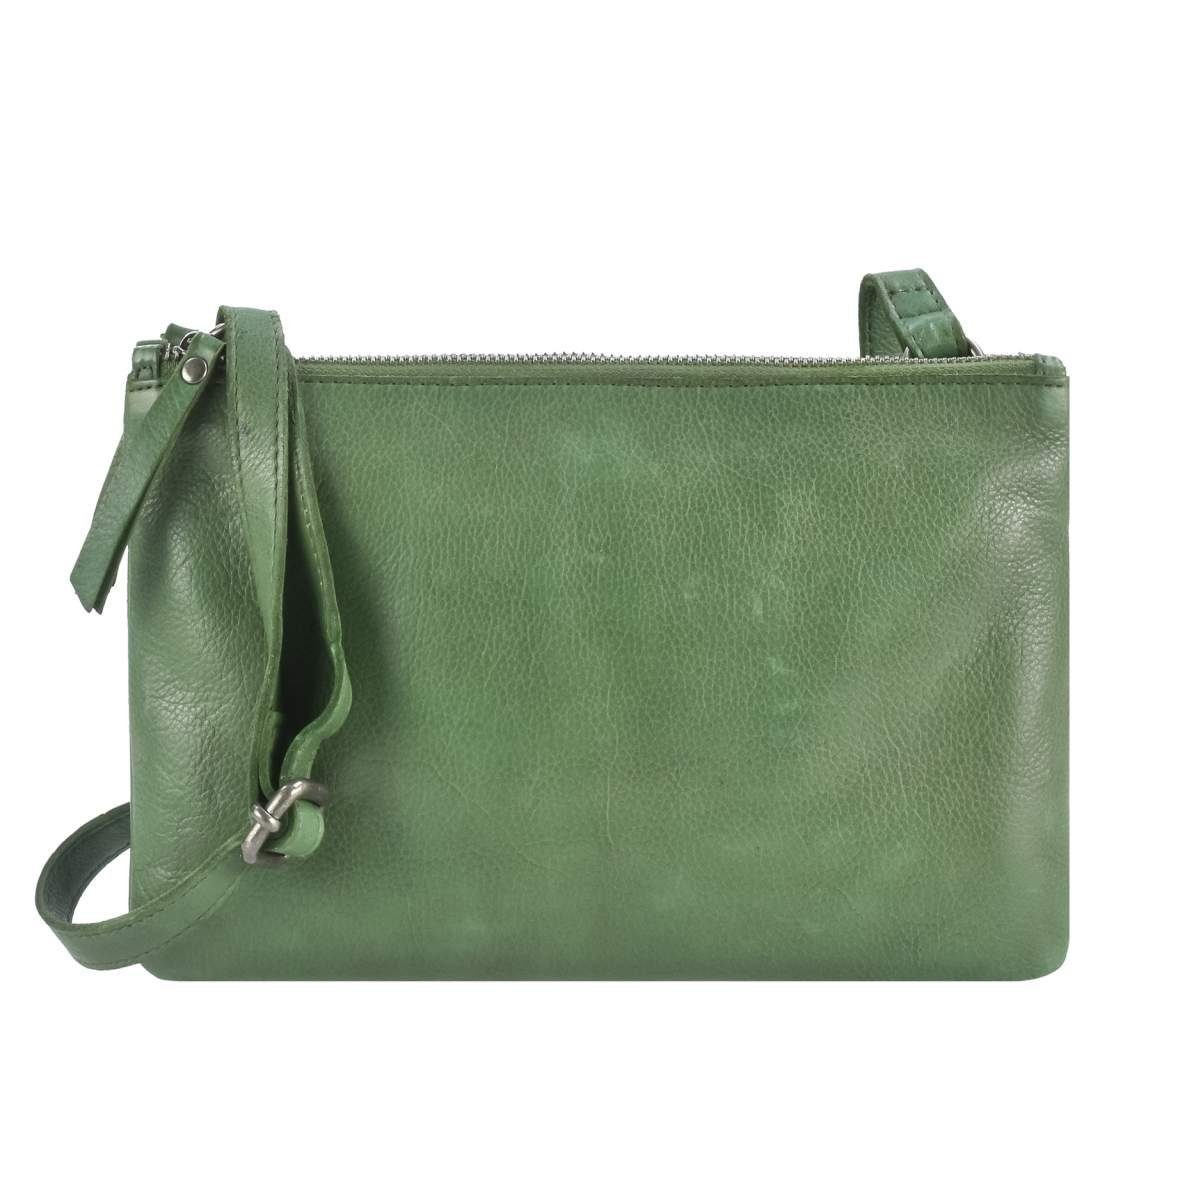 Greenburry Umhängetasche Soft Washed, Schultertasche 25x16cm mit 2 einzelnen Reißverschlussfächern emerald green